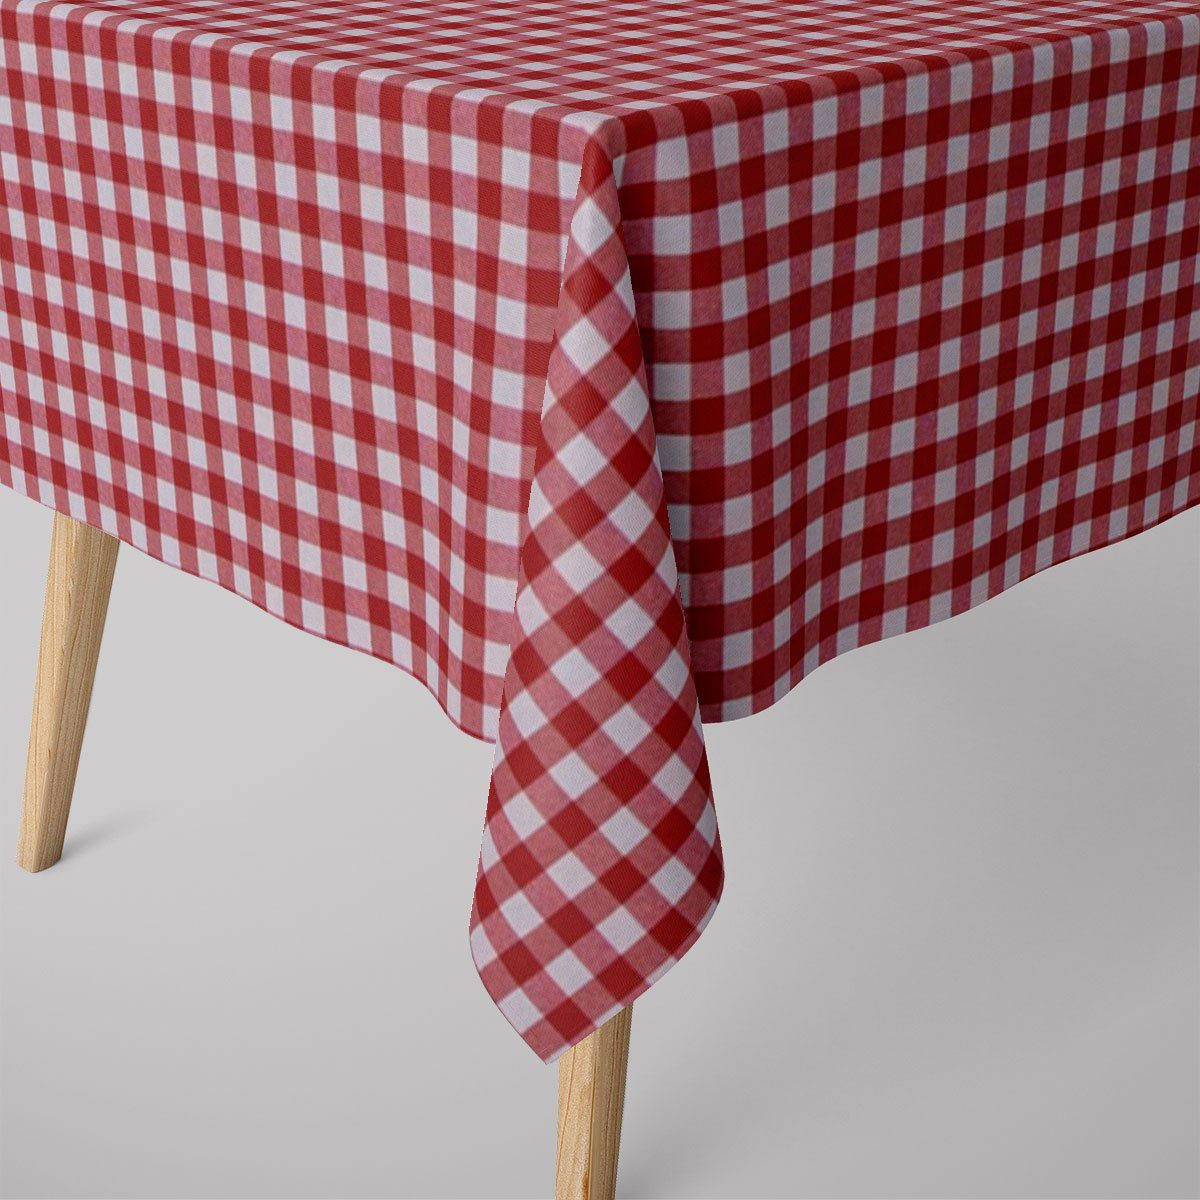 SCHÖNER LEBEN. Tischdecke SCHÖNER LEBEN. Tischdecke Landhaus kariert rot weiß verschiedene Größen, handmade | Tischdecken